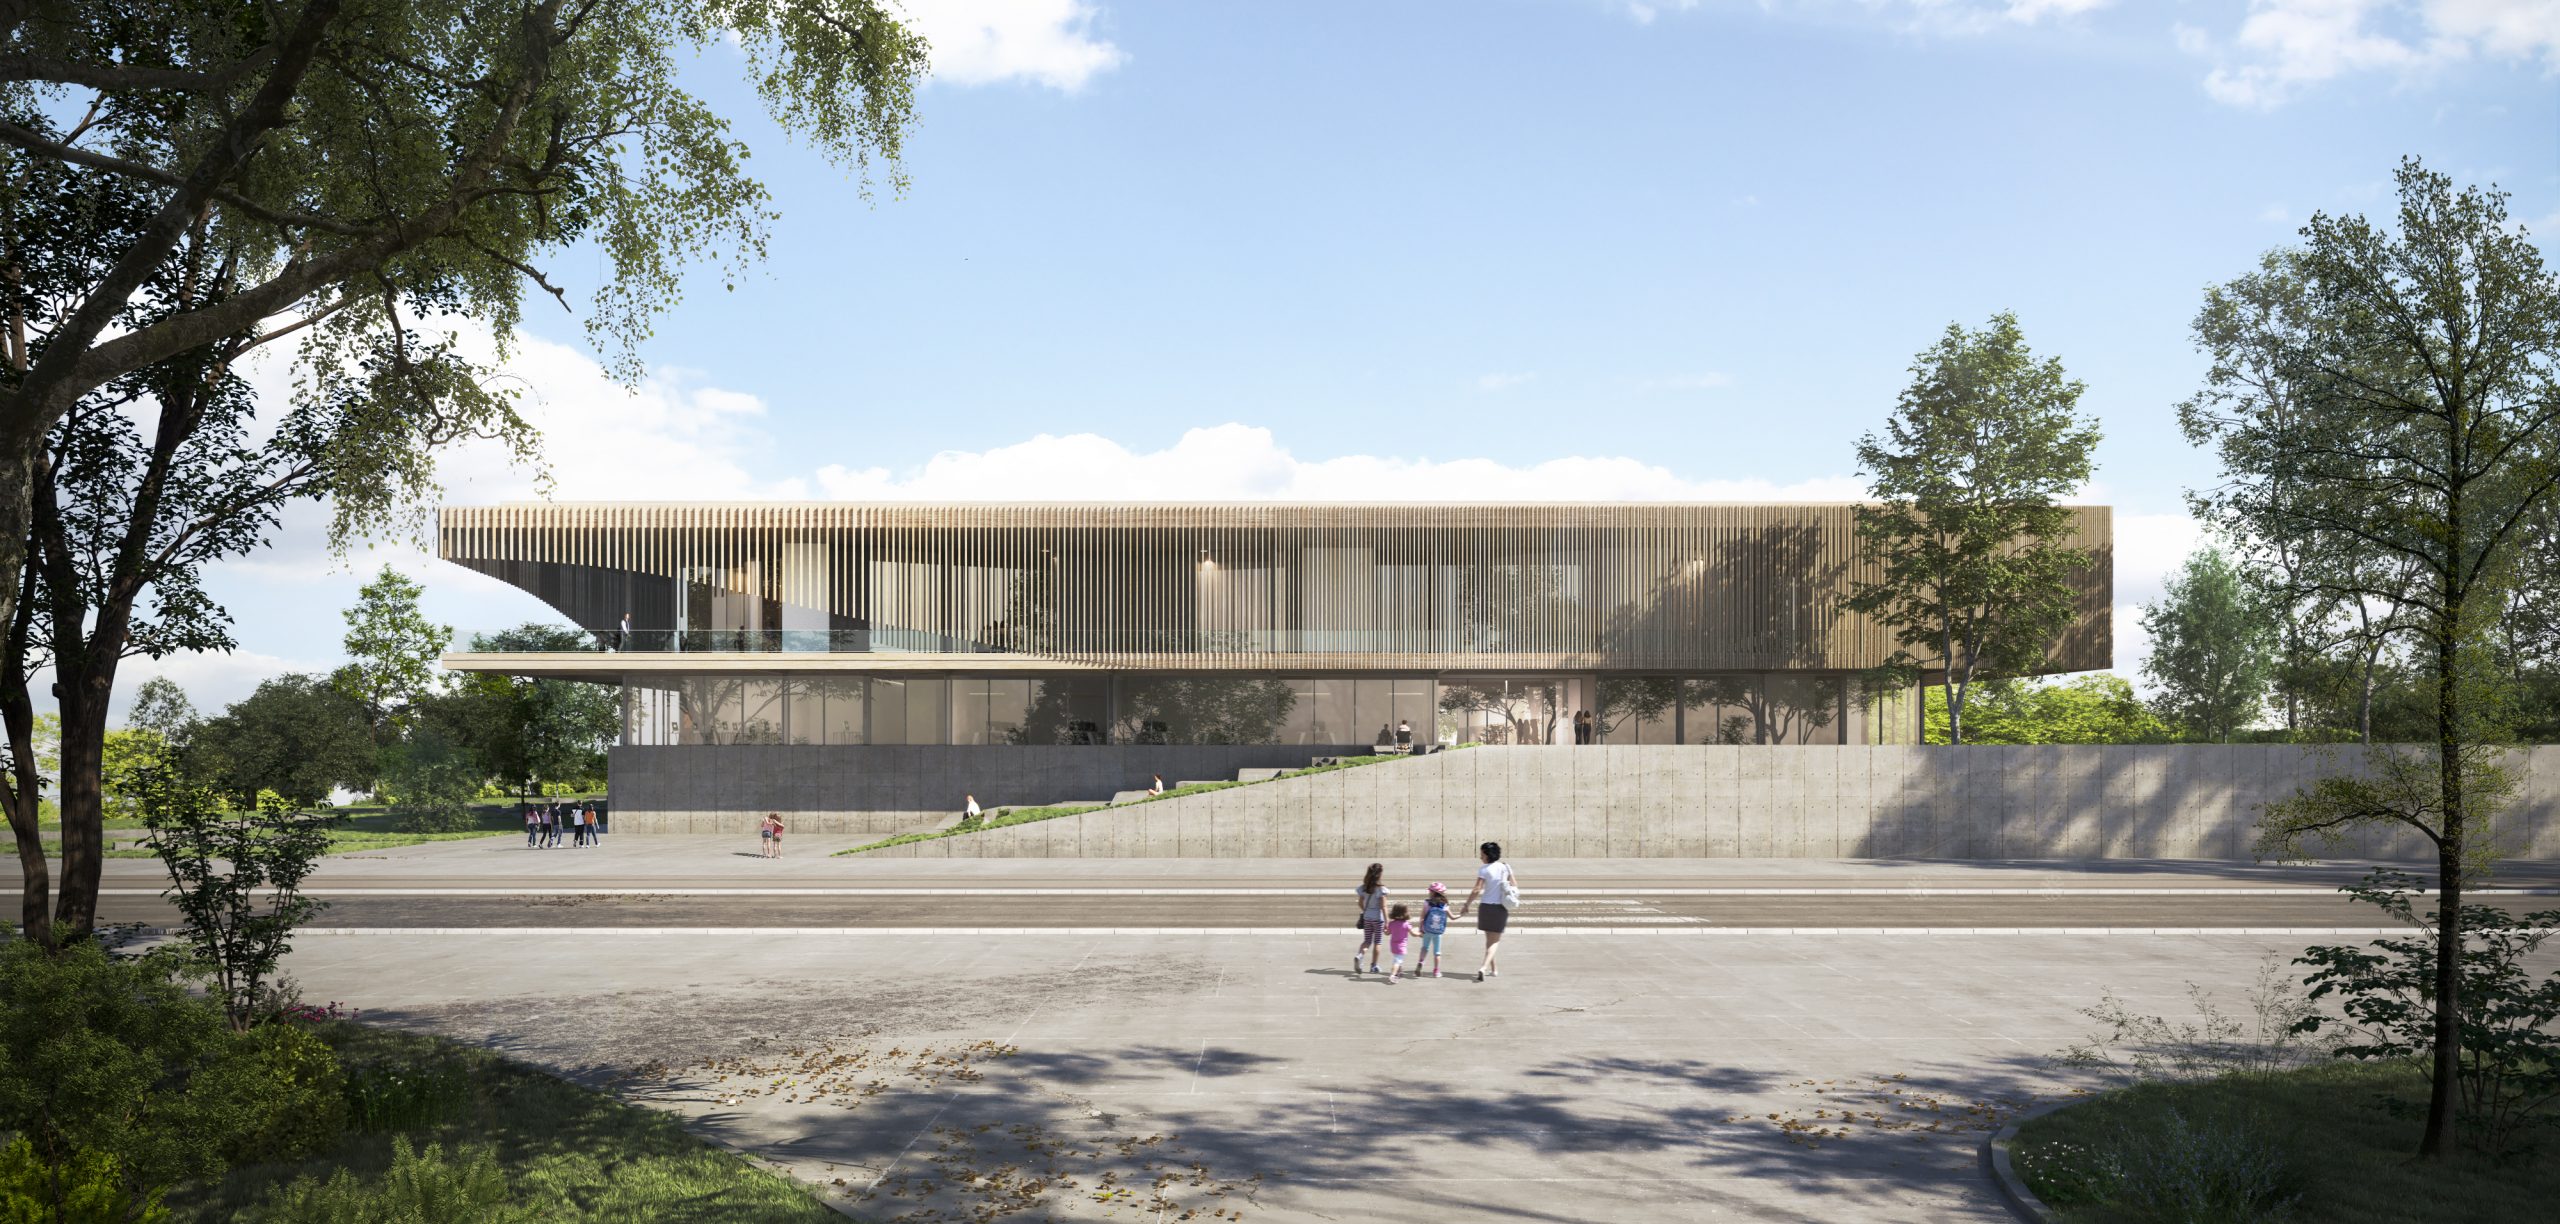 Hamburger Architekturbüro konzipiert neues innovatives Schulgebäude – als zukunftsweisendes Modell für Deutschland